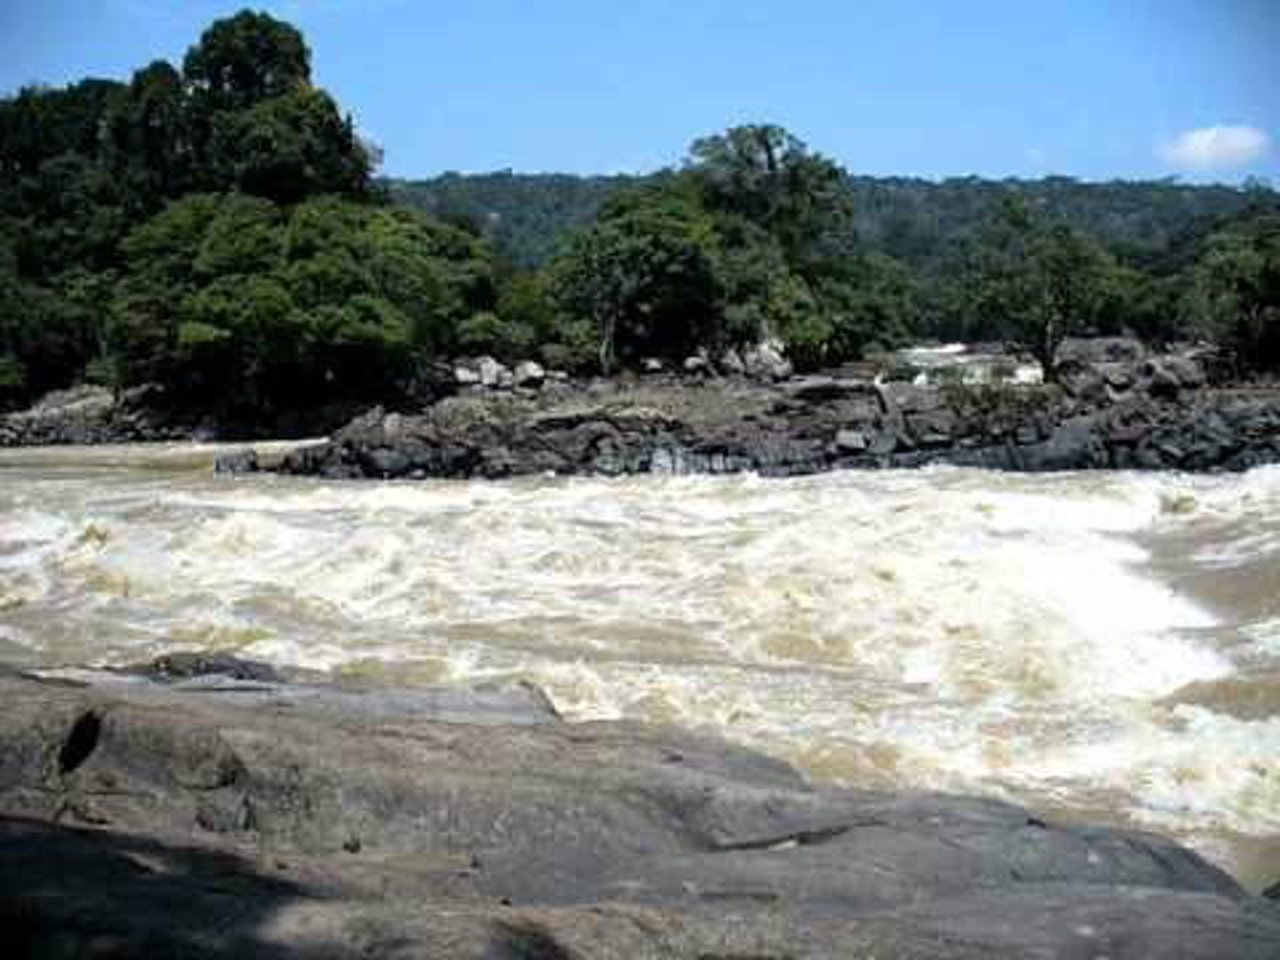 Río Caquetá